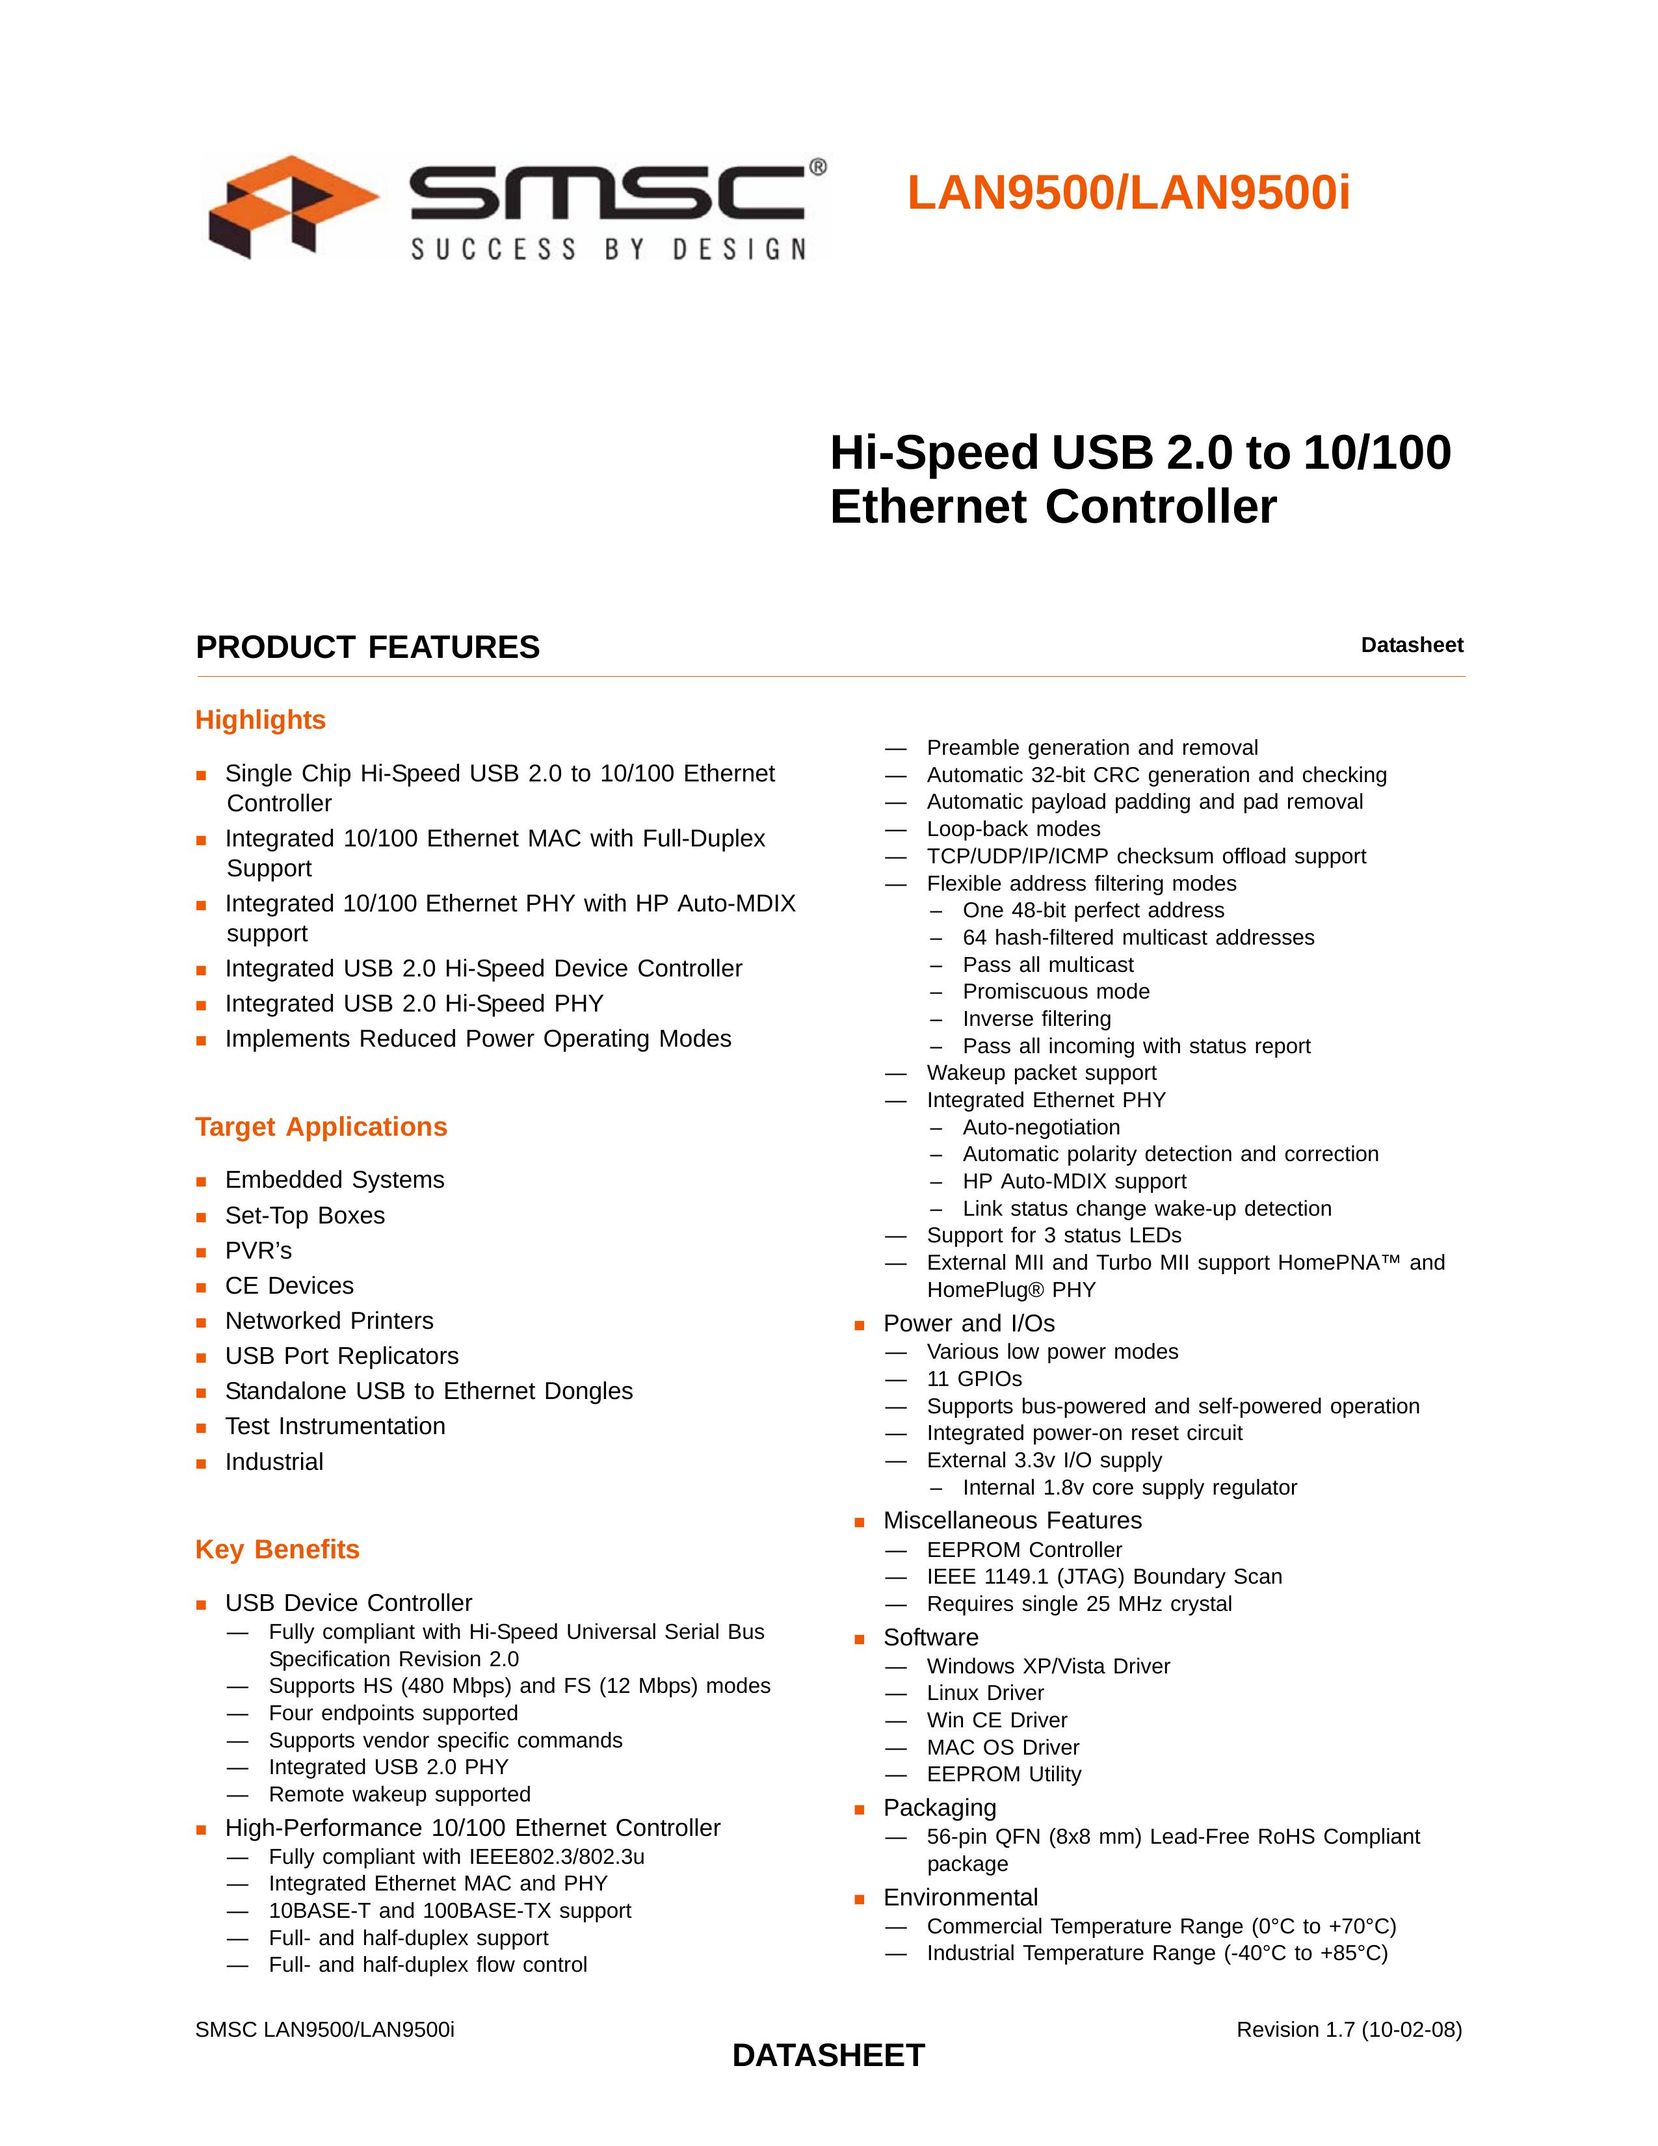 SMSC LAN9500 Network Card User Manual